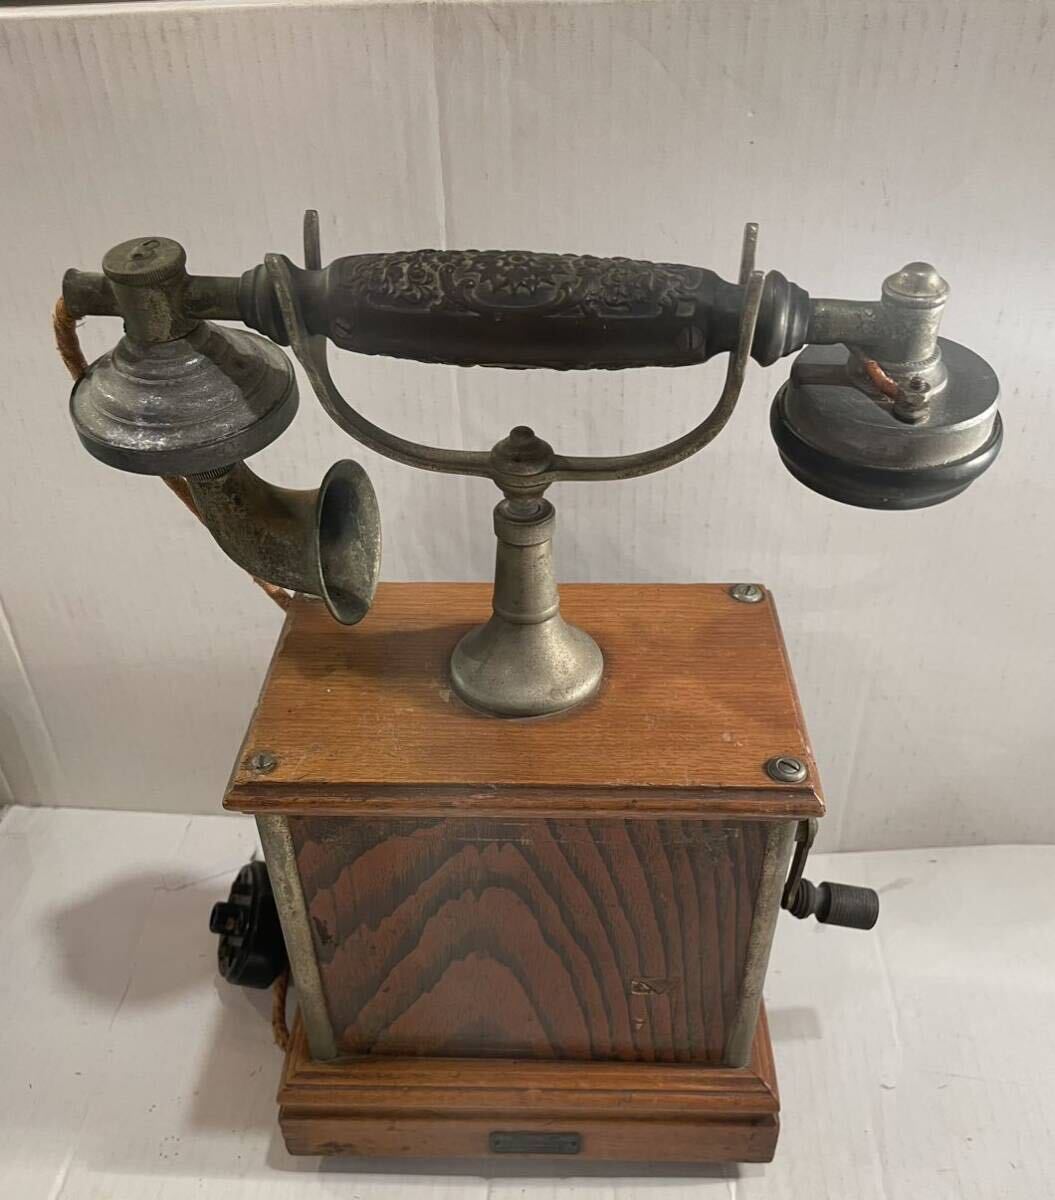 【大正当時物】日本電気株式会社製 デルビル磁石式卓上電話機 手回し 1920年代 大正ロマン アンティーク ビンテージ 電話 卓上電話機_画像1